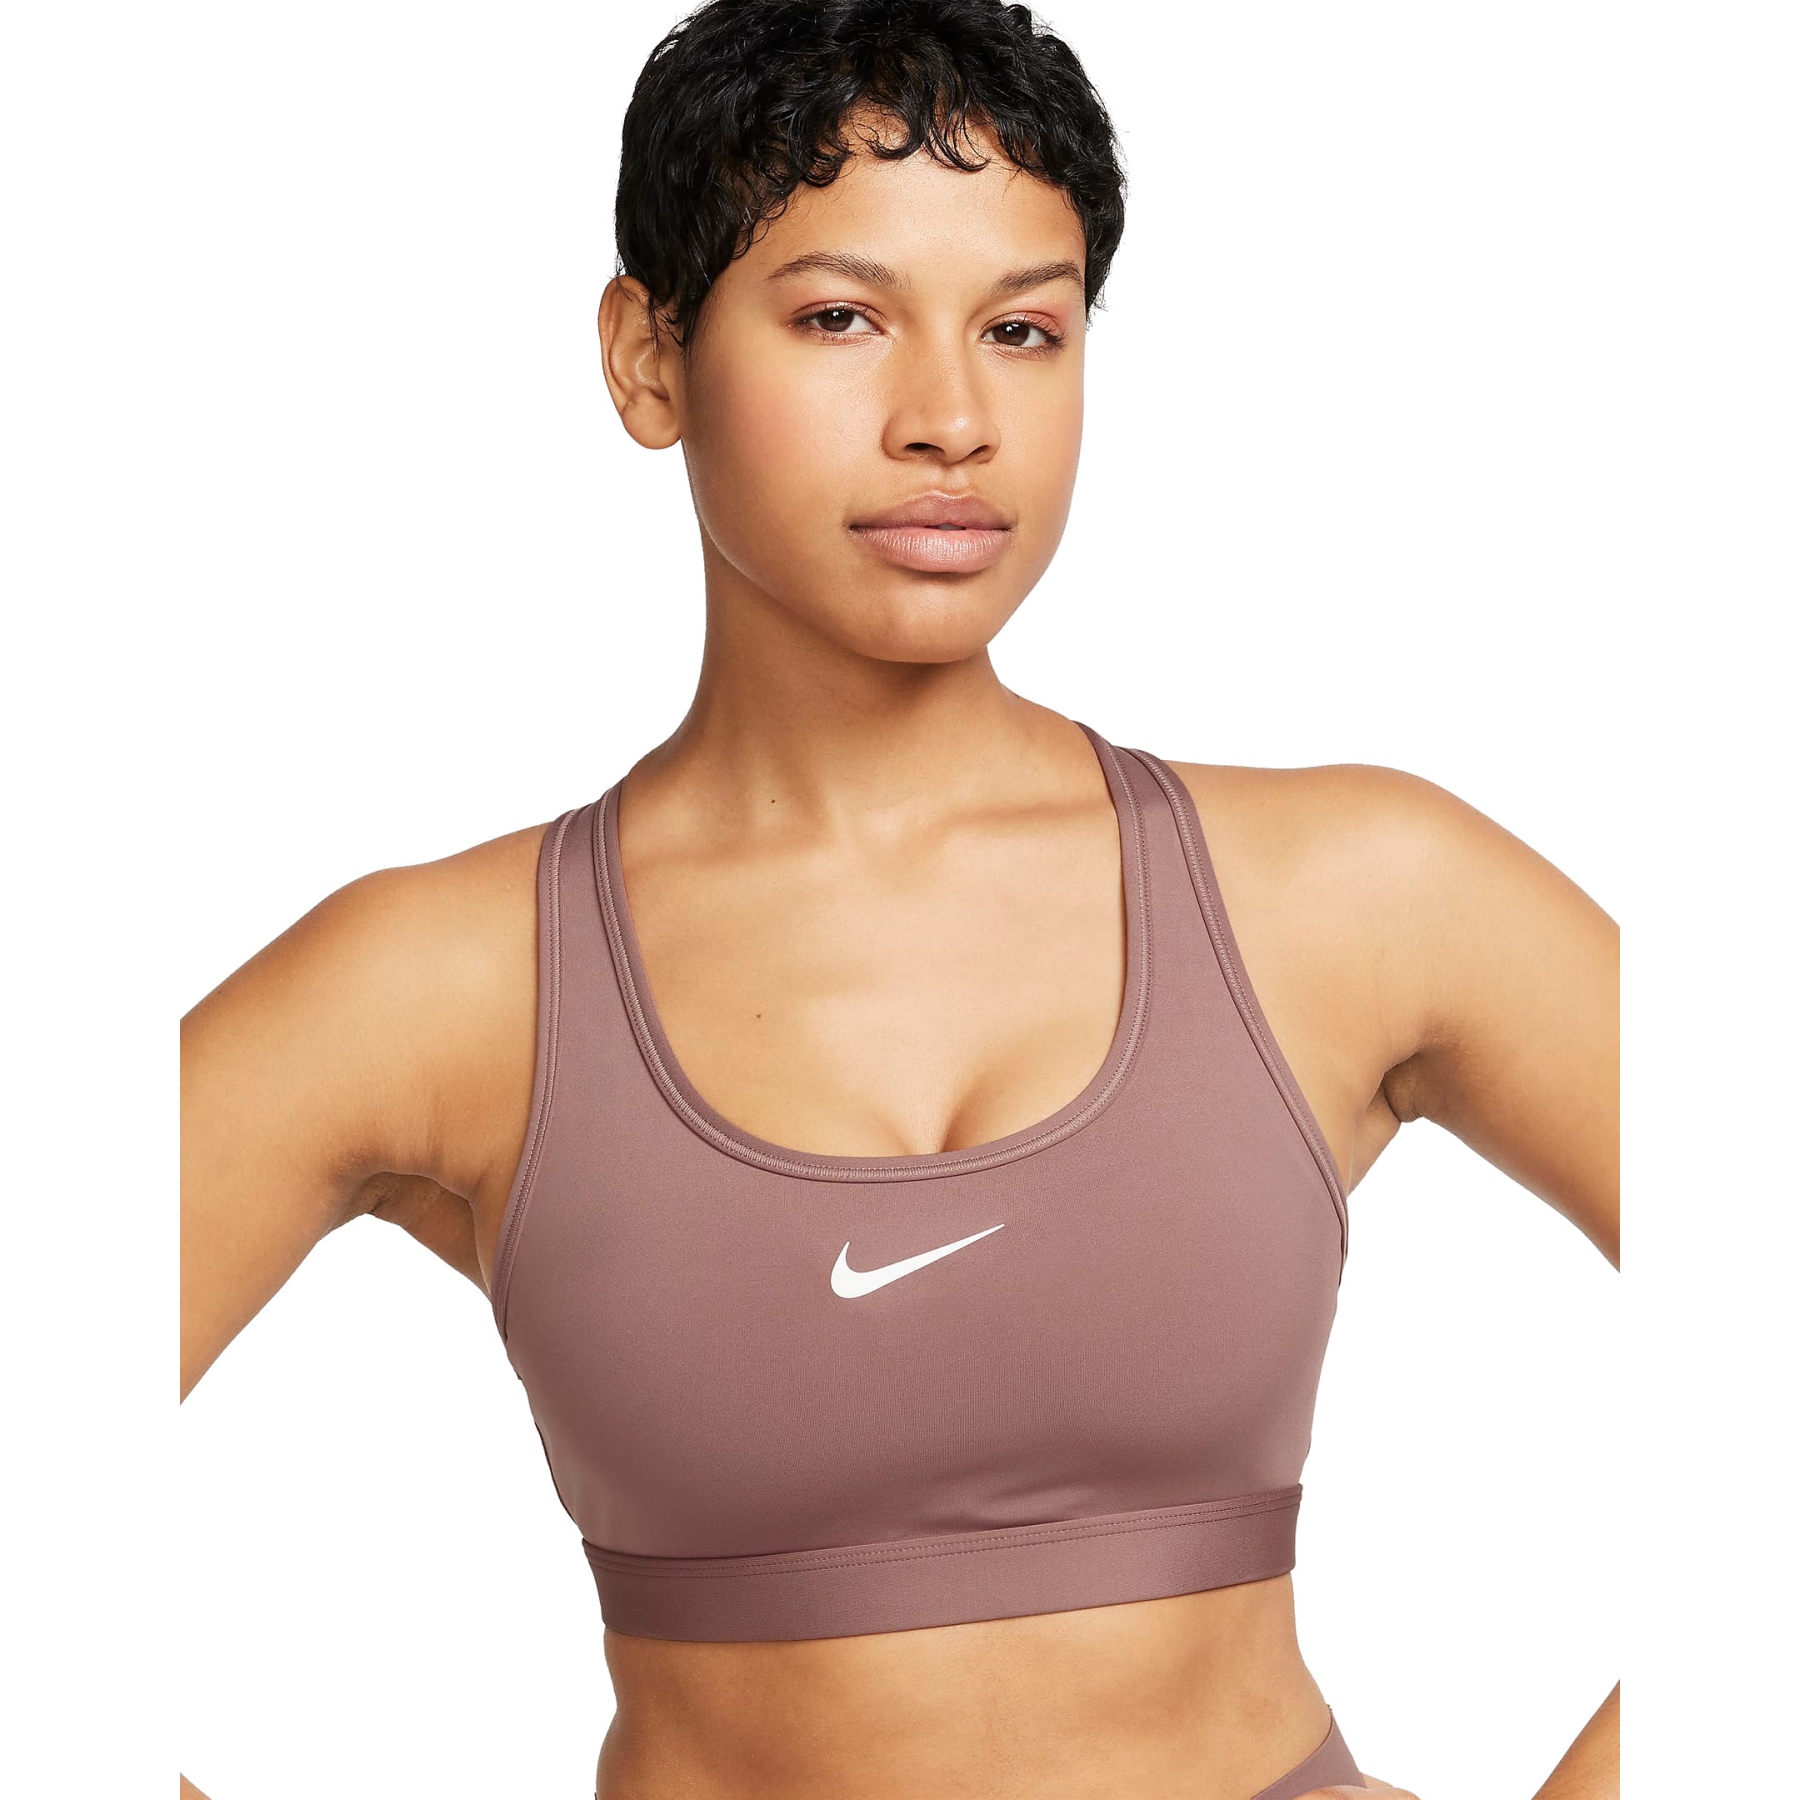 Produktbild von Nike Swoosh Medium Support Sport-BH mit Polster Damen - smokey mauve/white DX6821-208